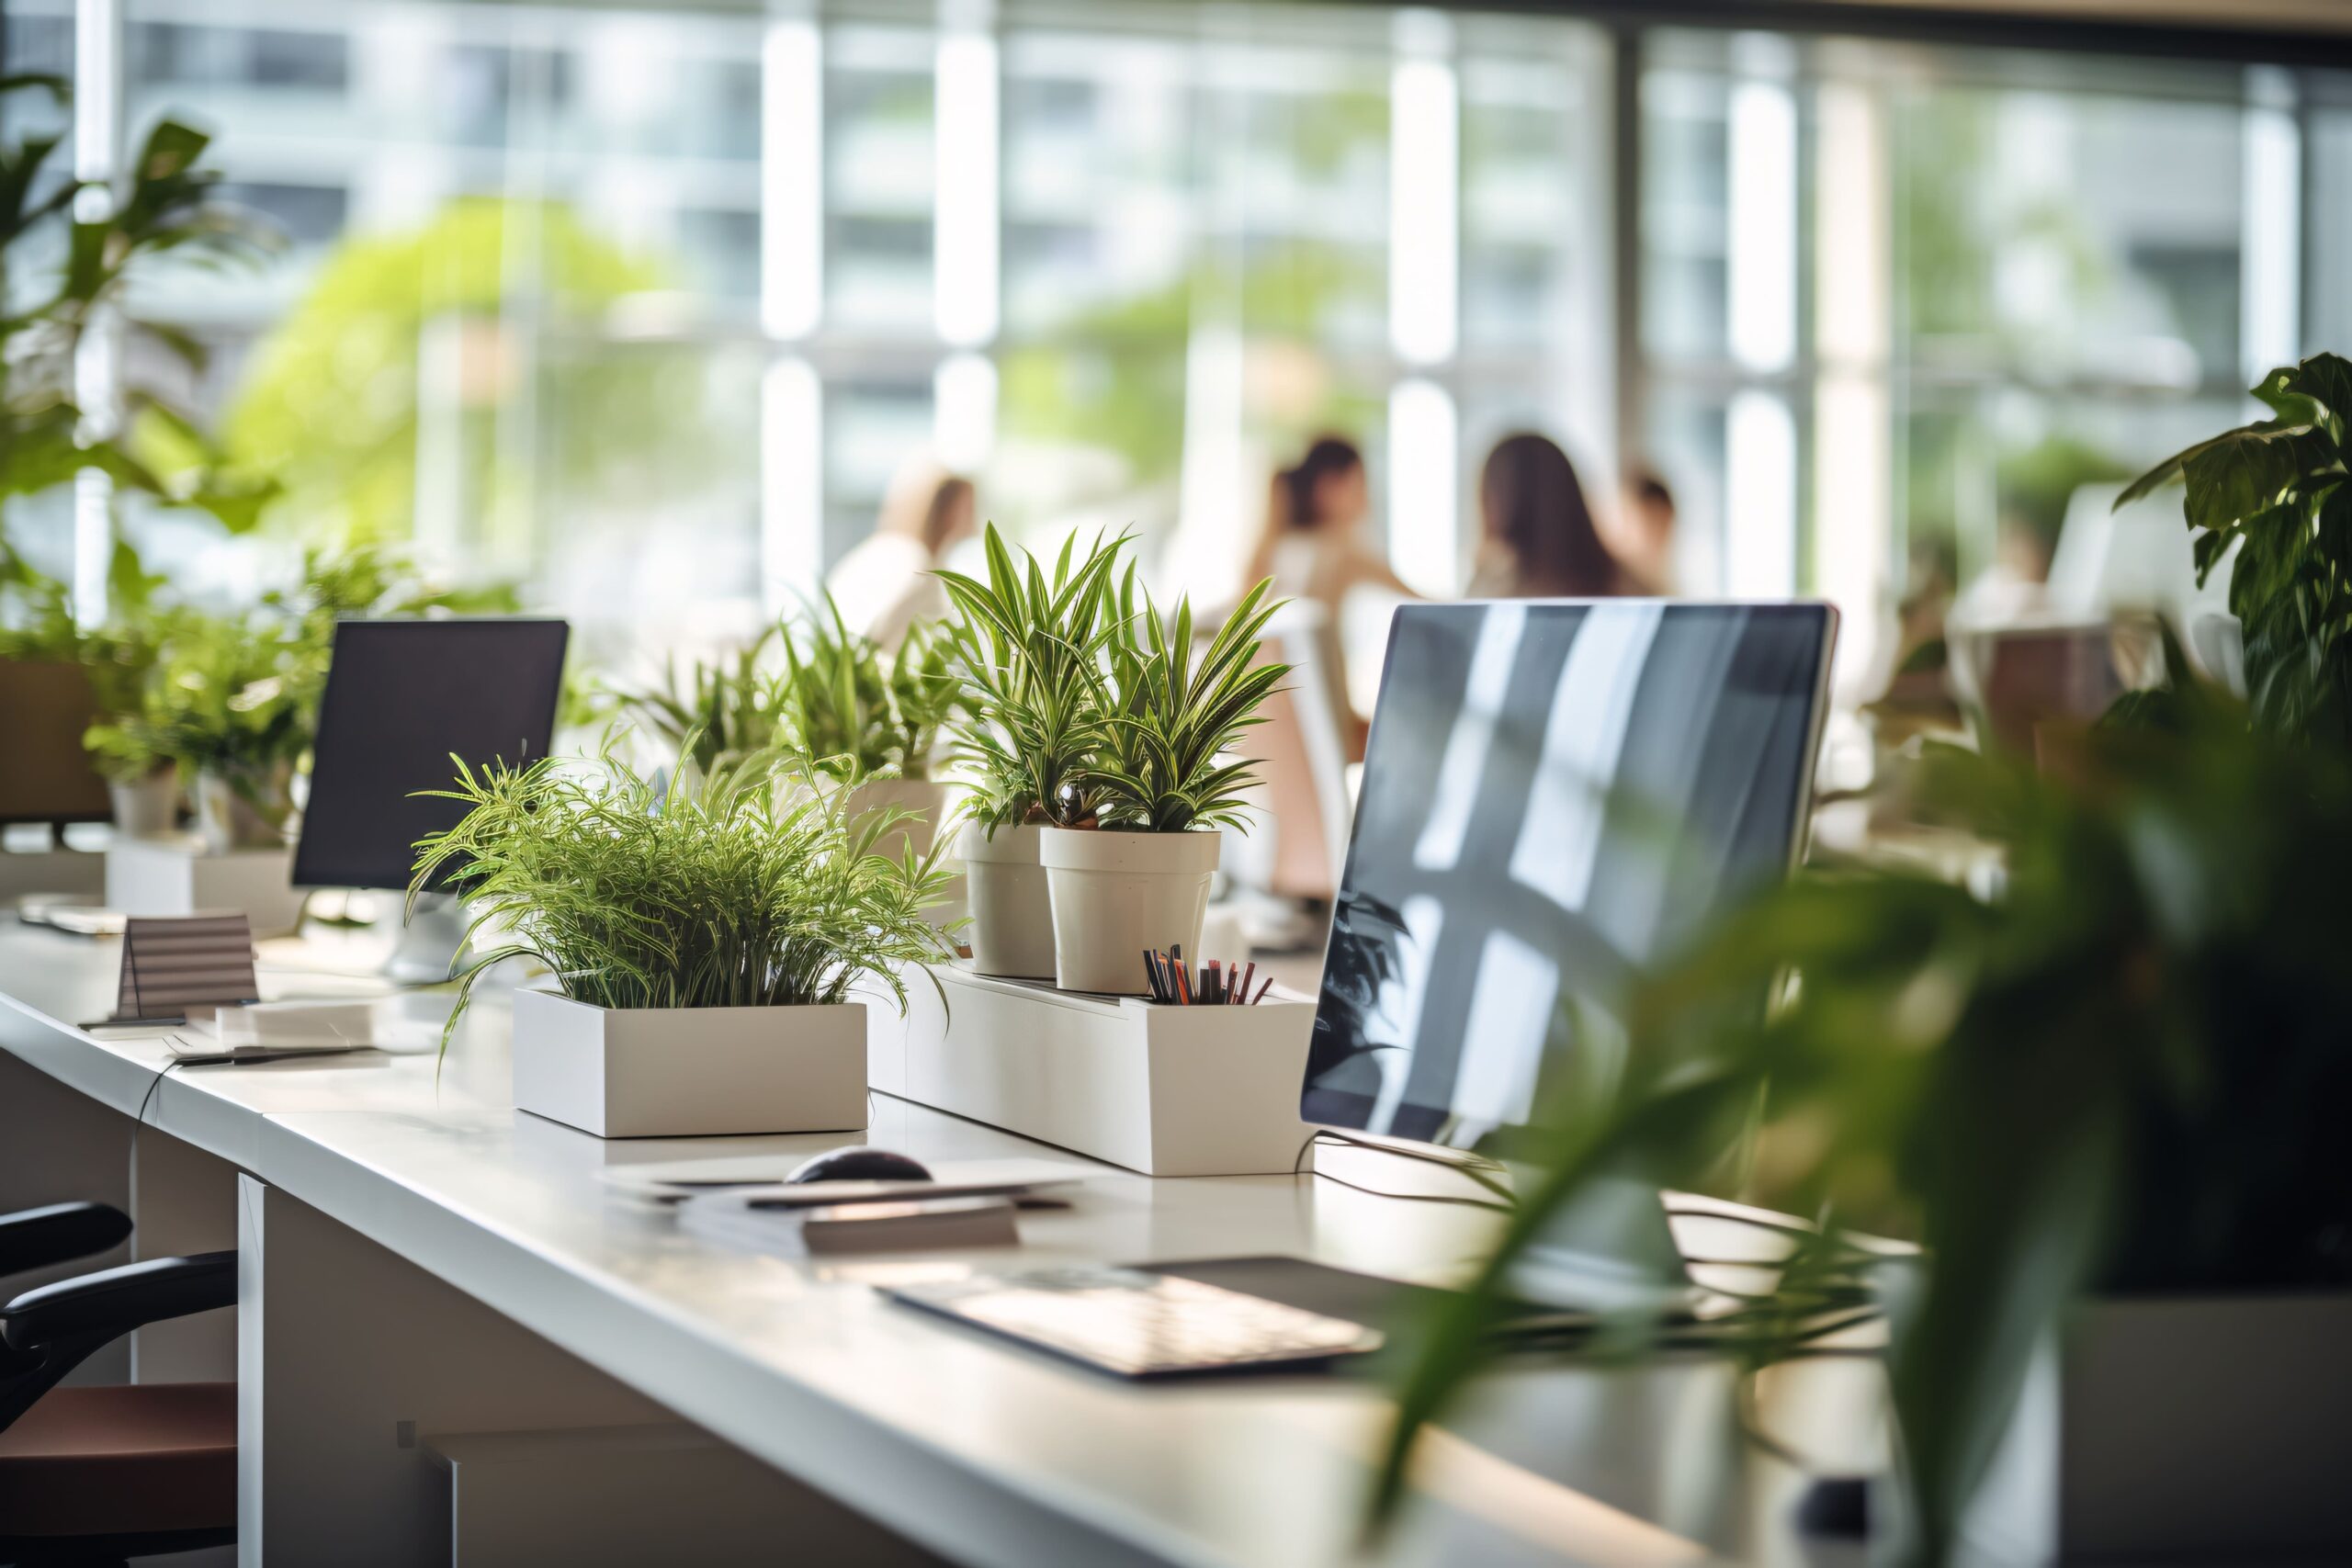 Photographie d'un environnement de travail plaisant : open space avec des ordinateurs et des plantes en pots sur les bureaux. On voit au loin des employés discuter